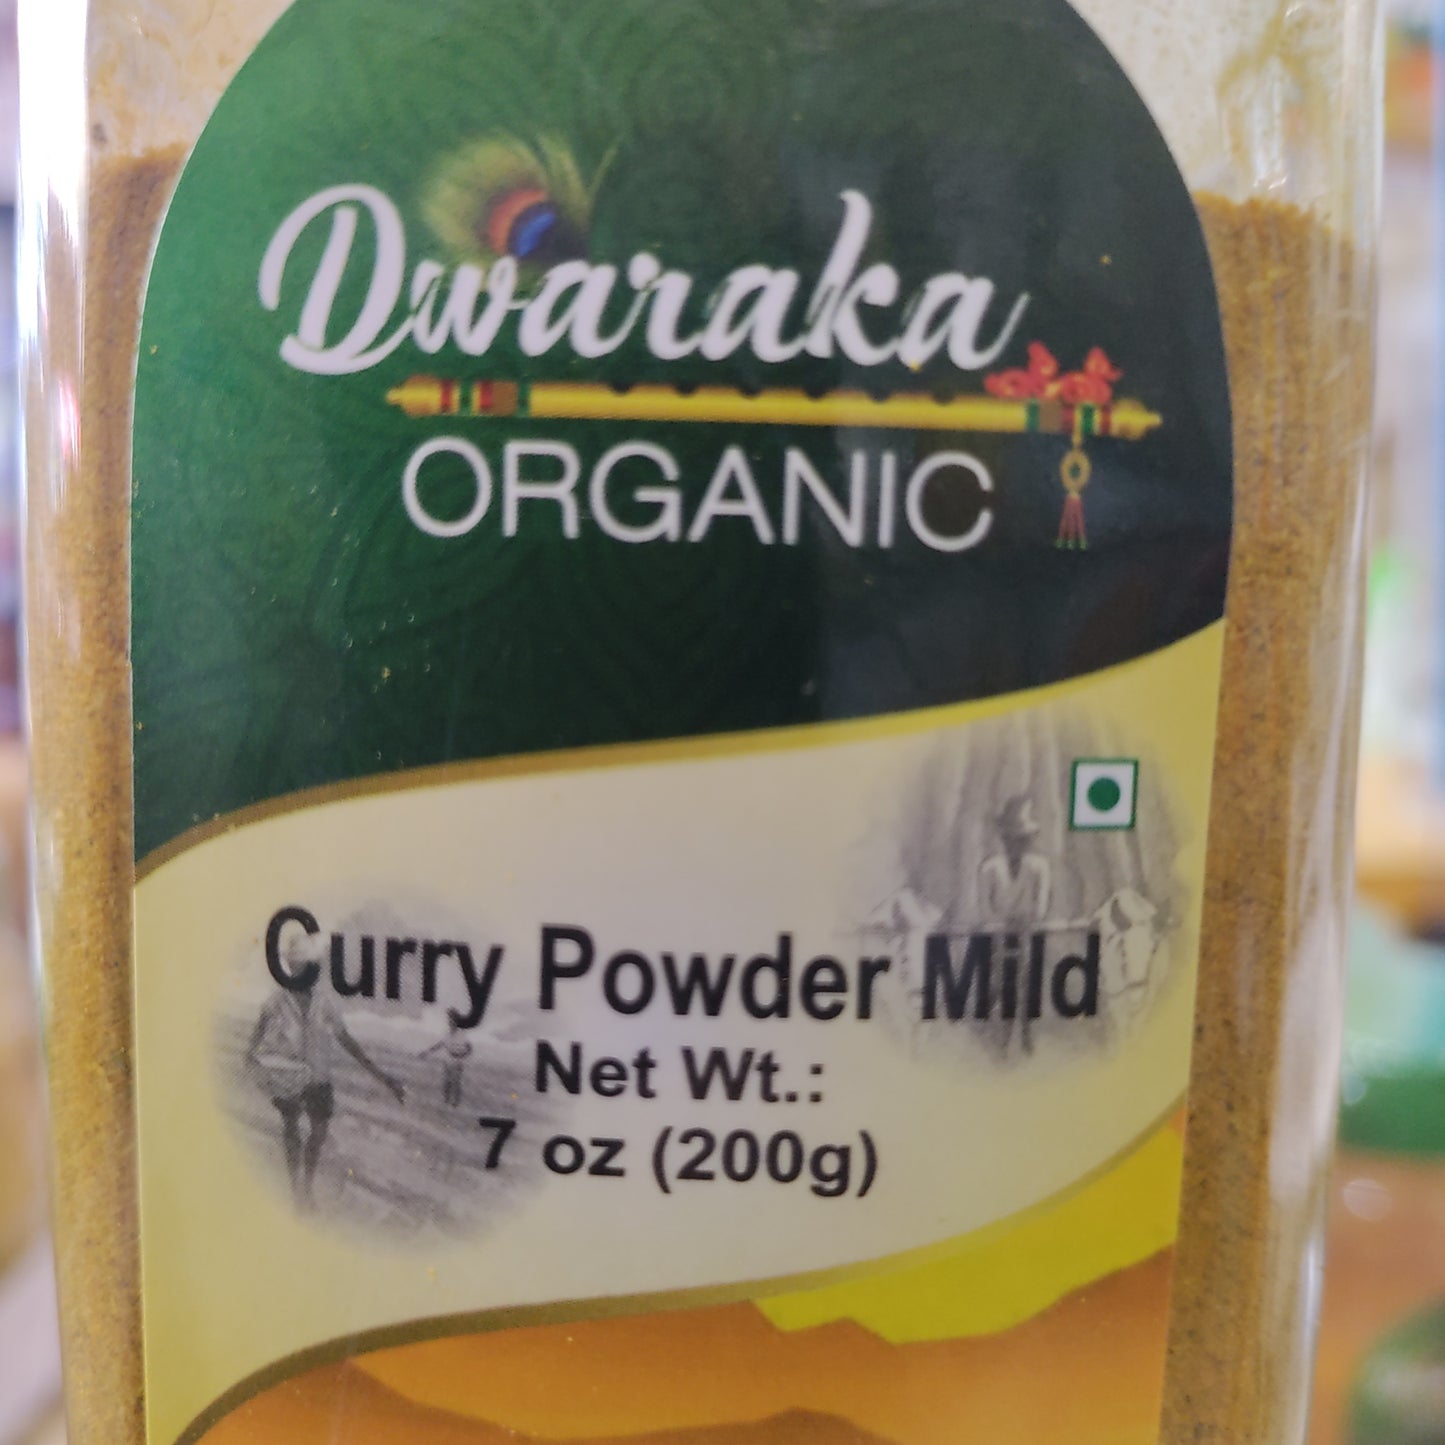 Dwaraka Organic Curry pow mild 7 ozs